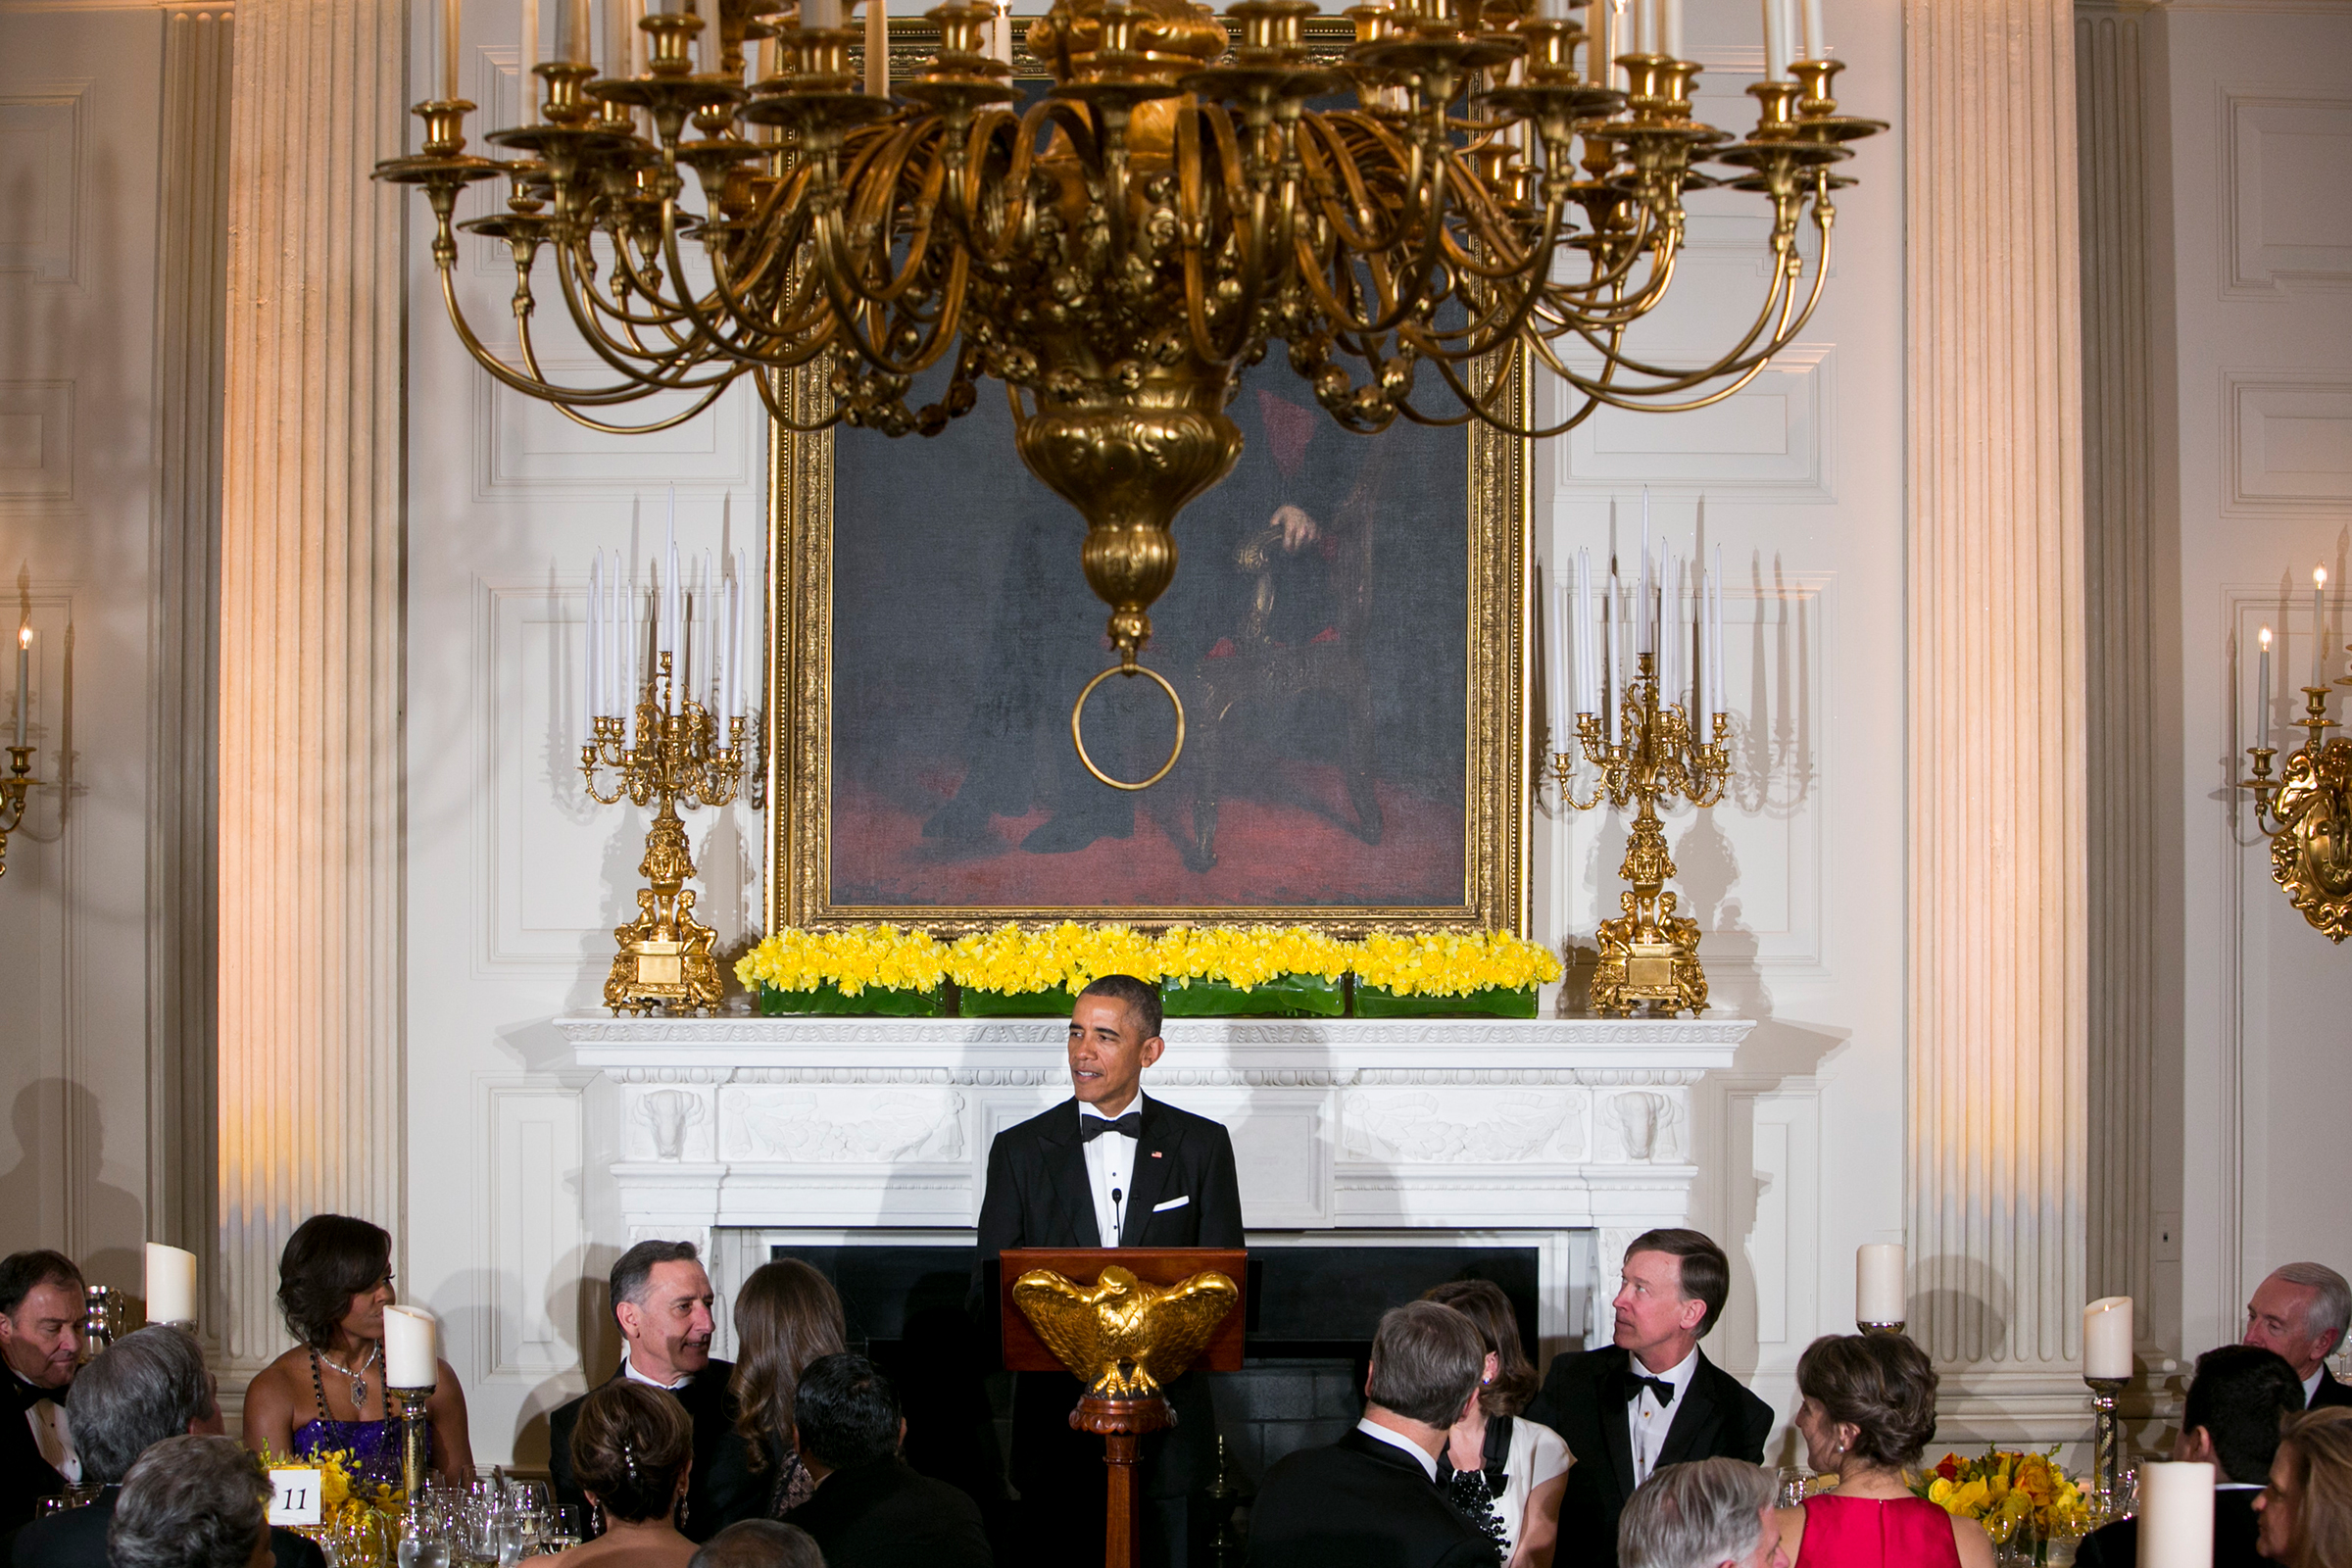 Ужины, устраивавшиеся&nbsp;44-м президентом США Бараком Обамой (на фото), были самыми многочисленными в истории мероприятий. Самый узкий круг Обама собрал в честь тогдашнего президента Мексики Фелипе Кальдерона в 2010 году &mdash; на ужине было около 200 гостей.
